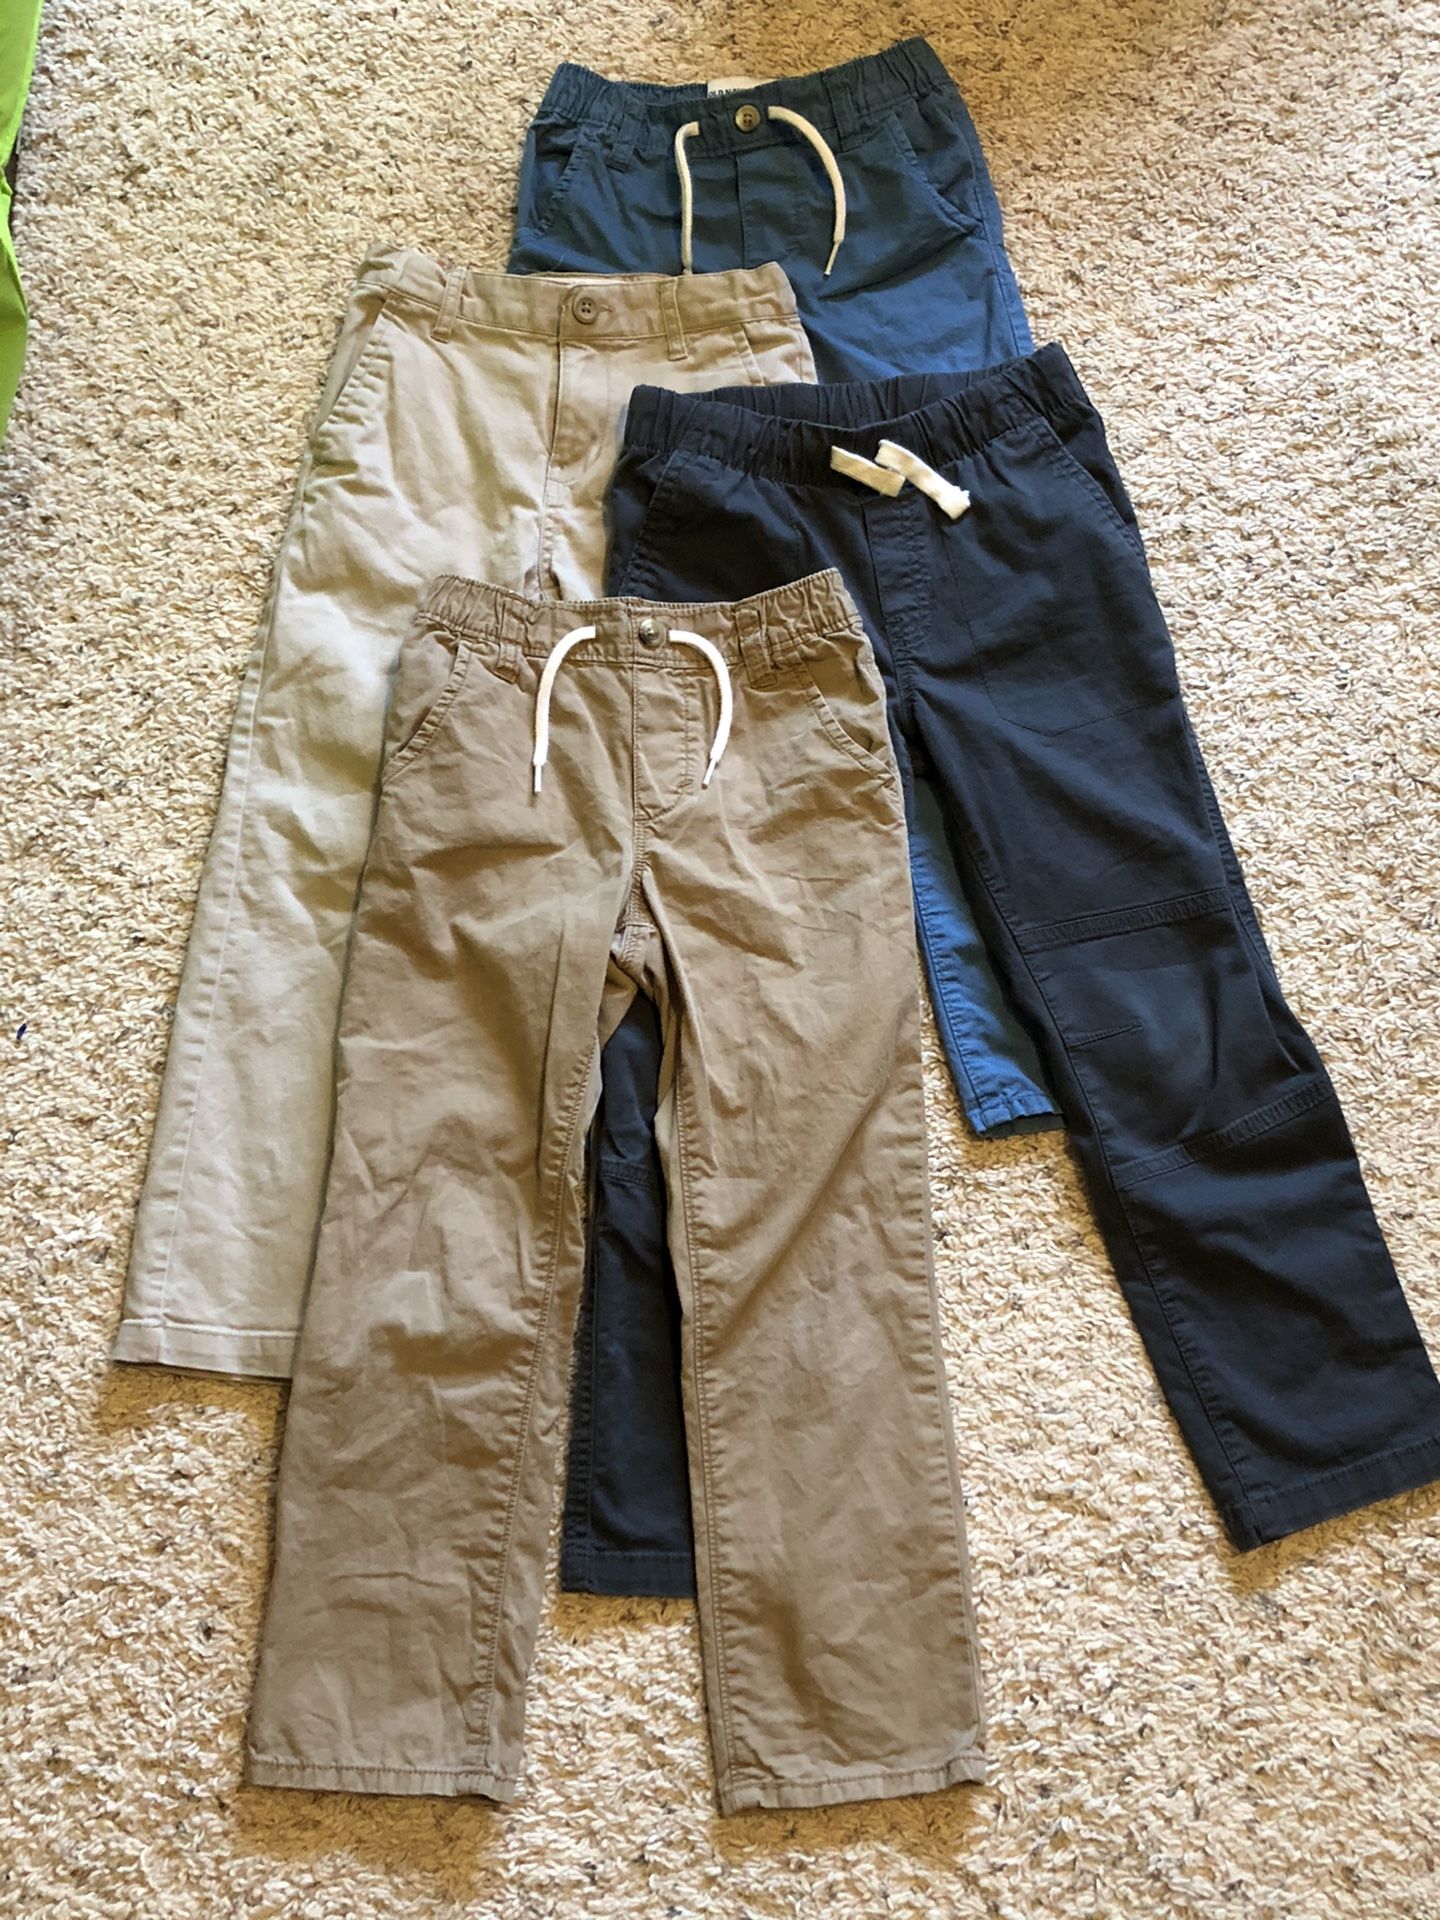 Boys uniform pants Size 5/6